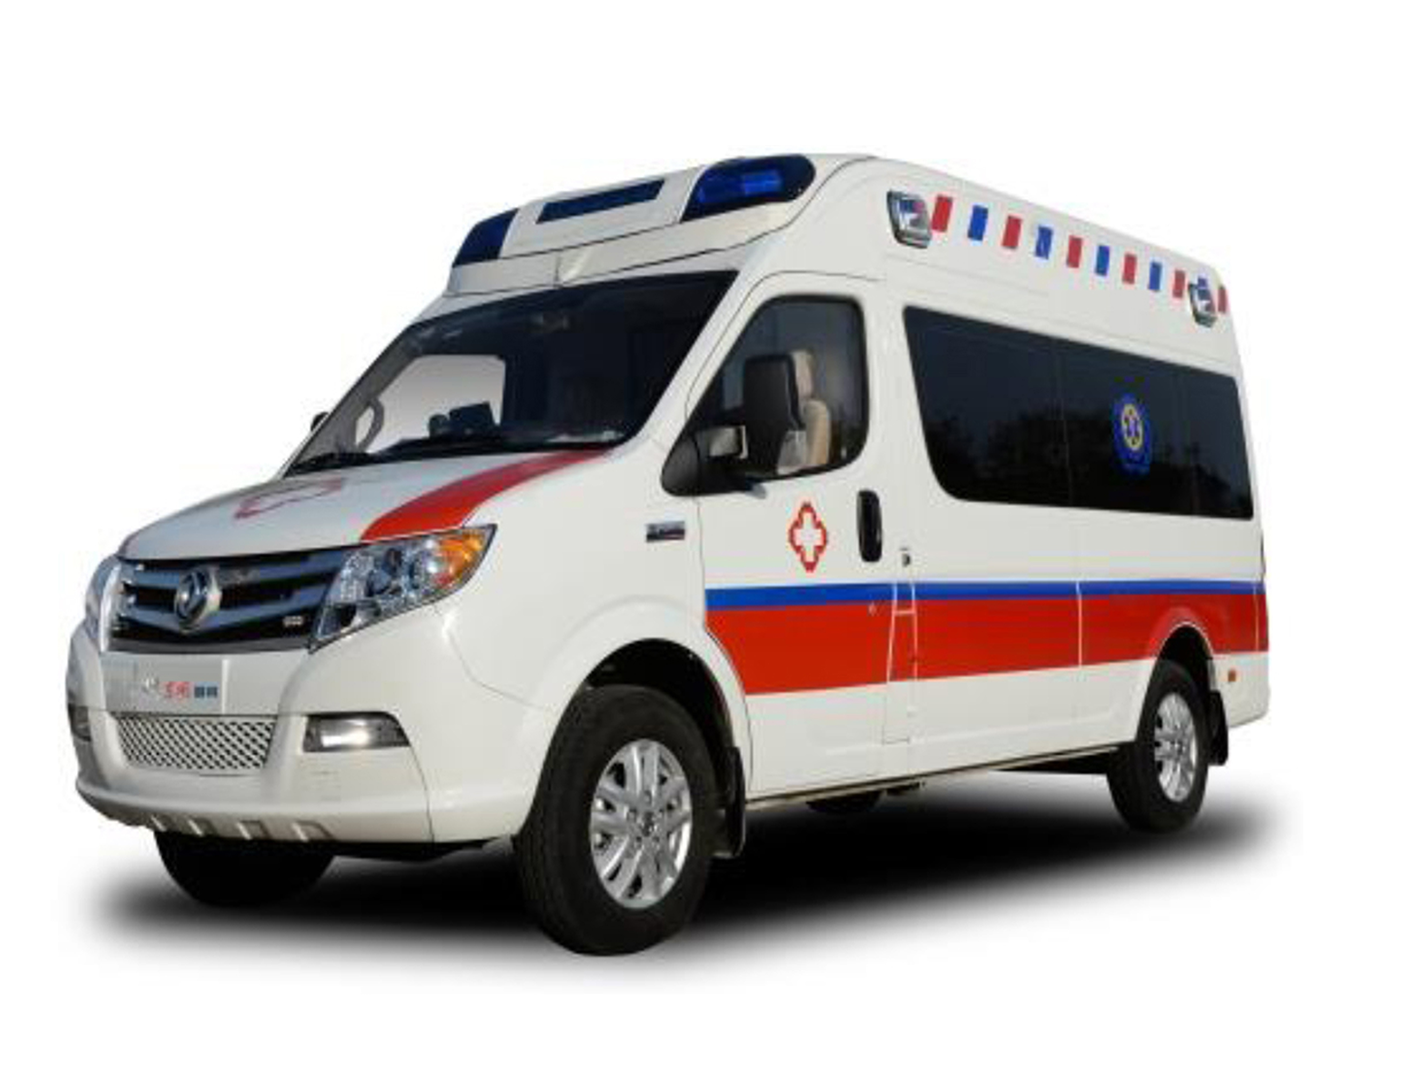 Ward Type Ambulance